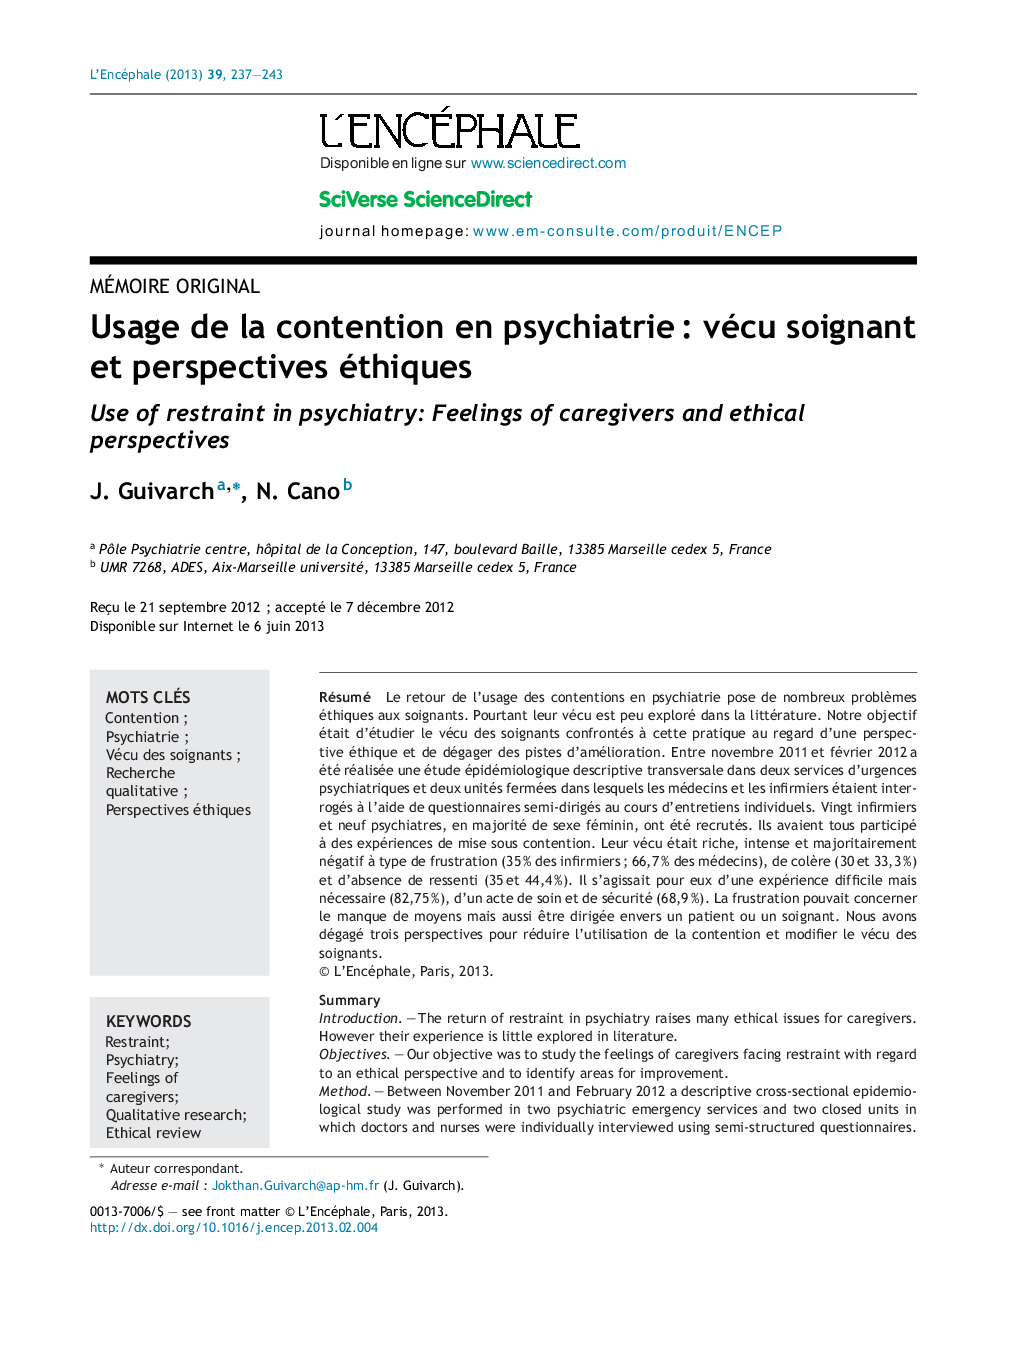 Usage de la contention en psychiatrieÂ : vécu soignant et perspectives éthiques